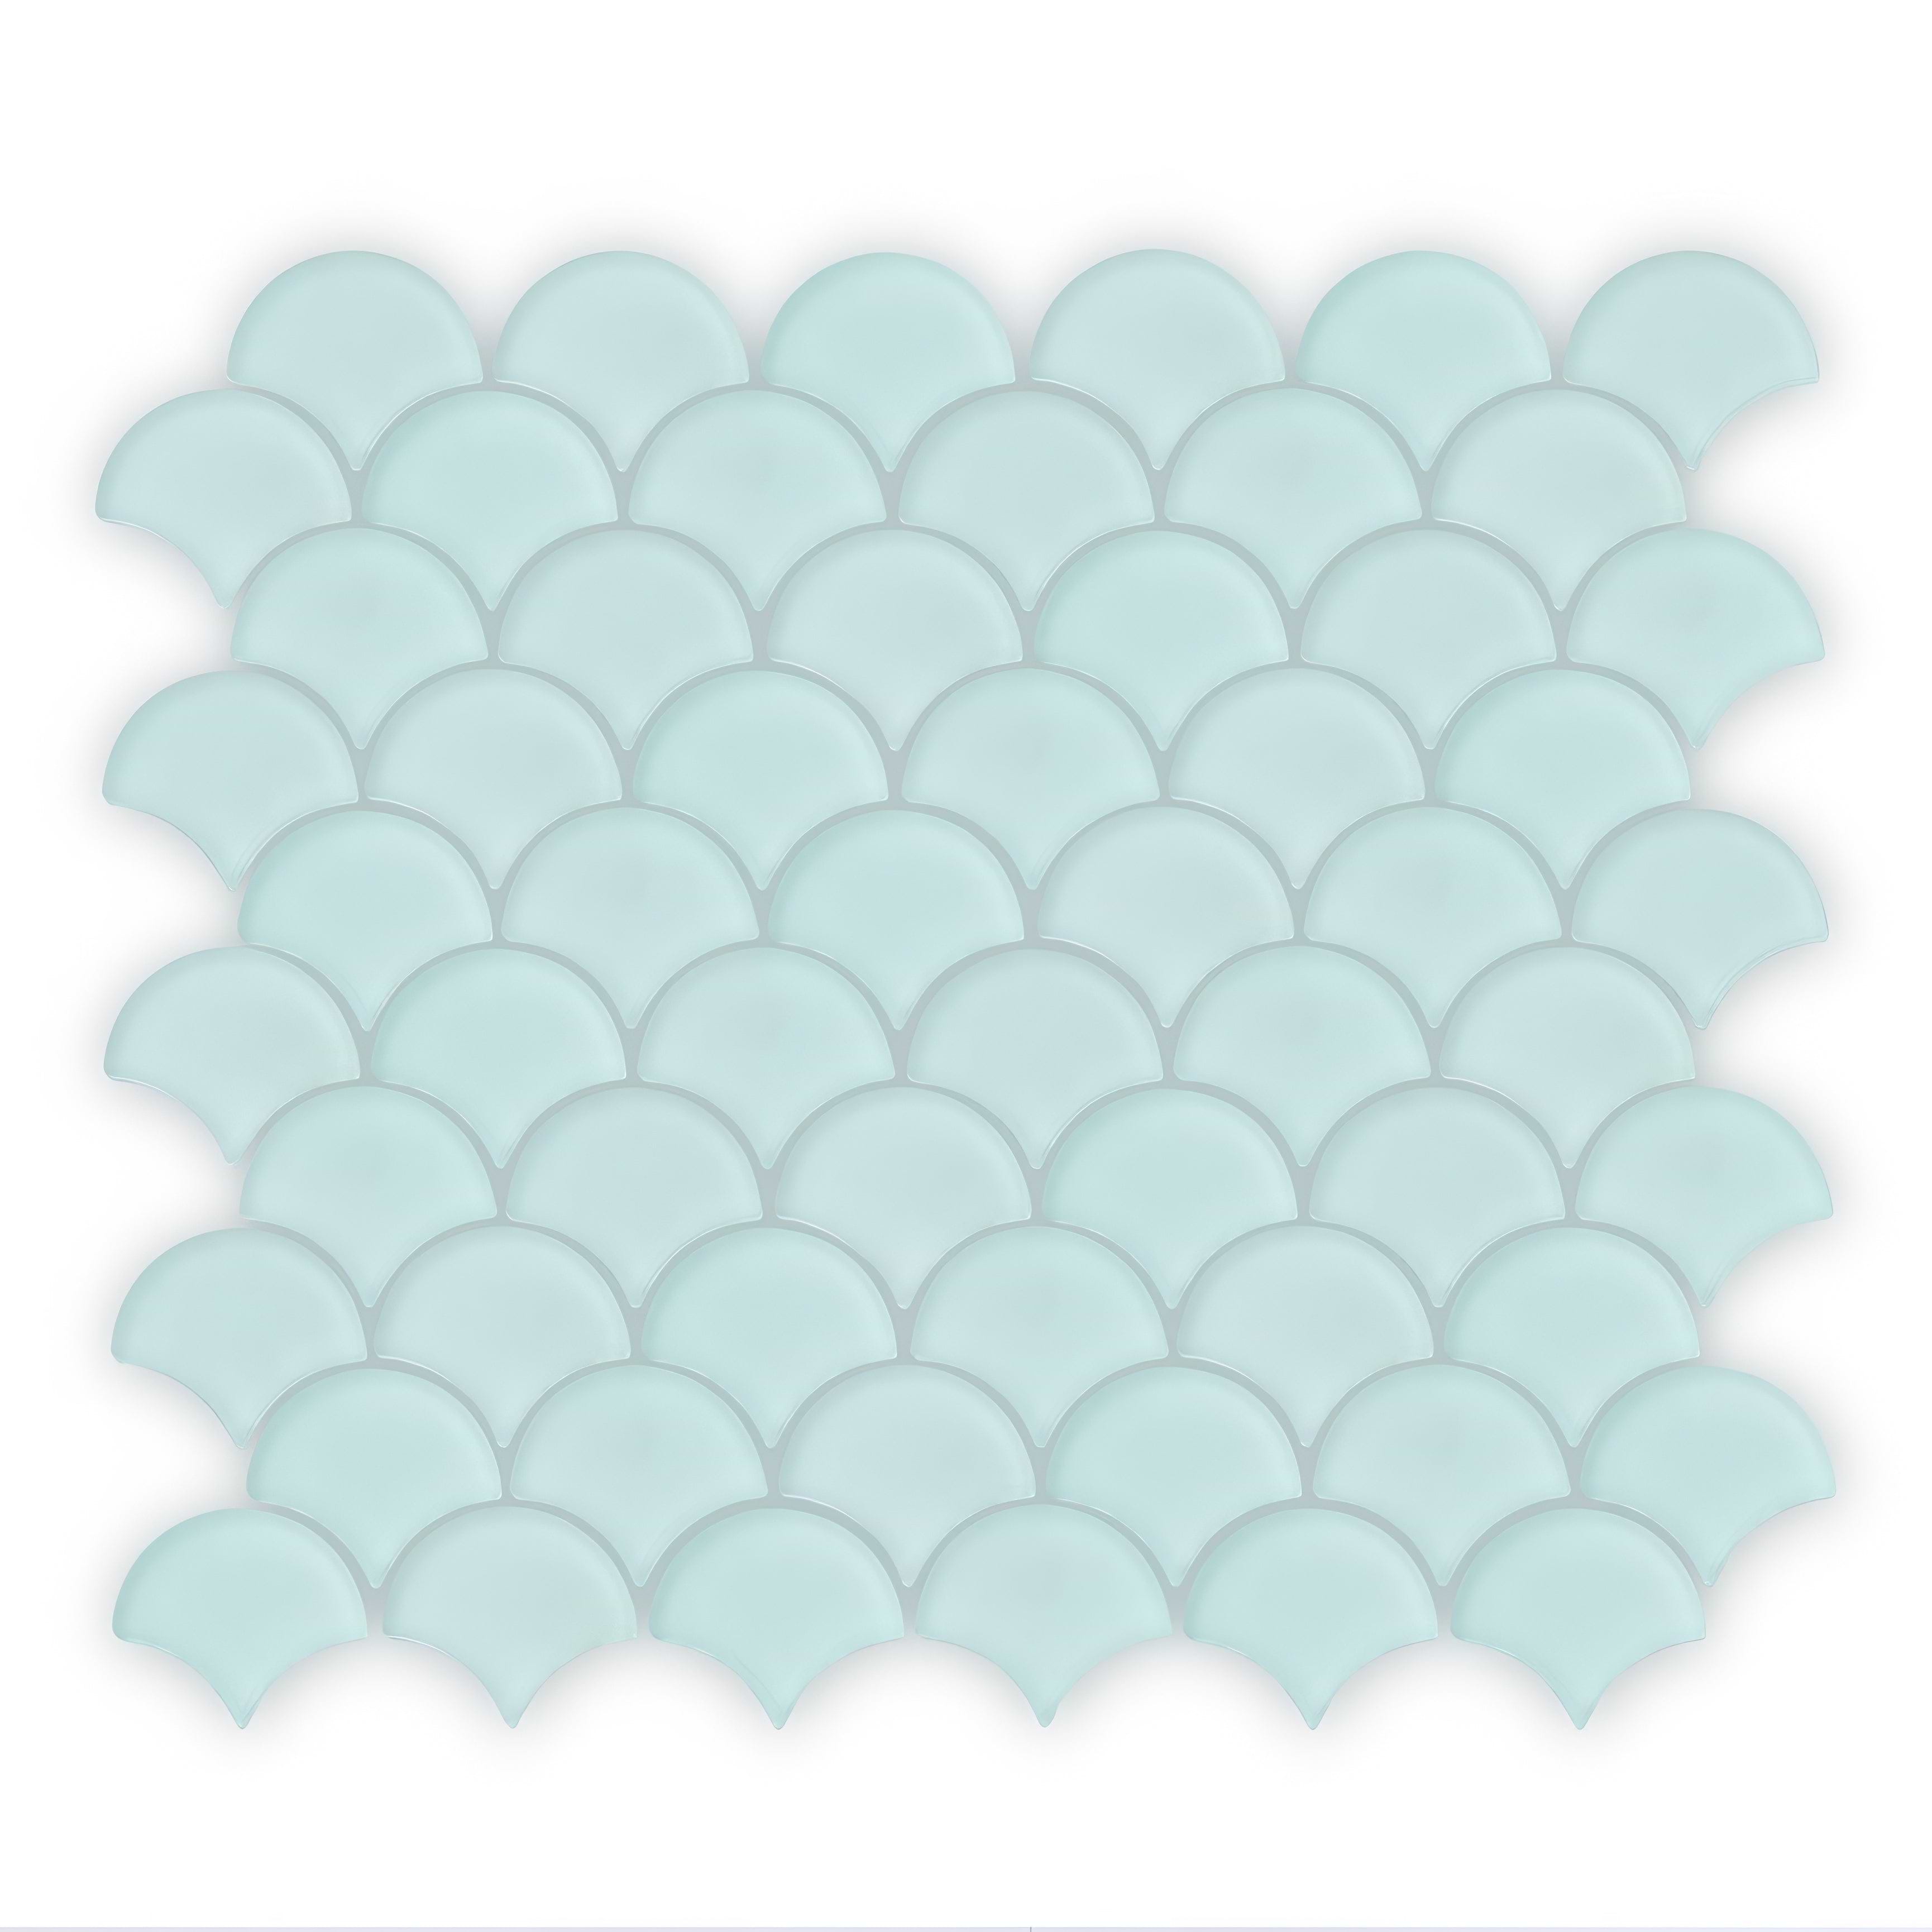 Aurora Fan Green Mosaic - Hyperion Tiles